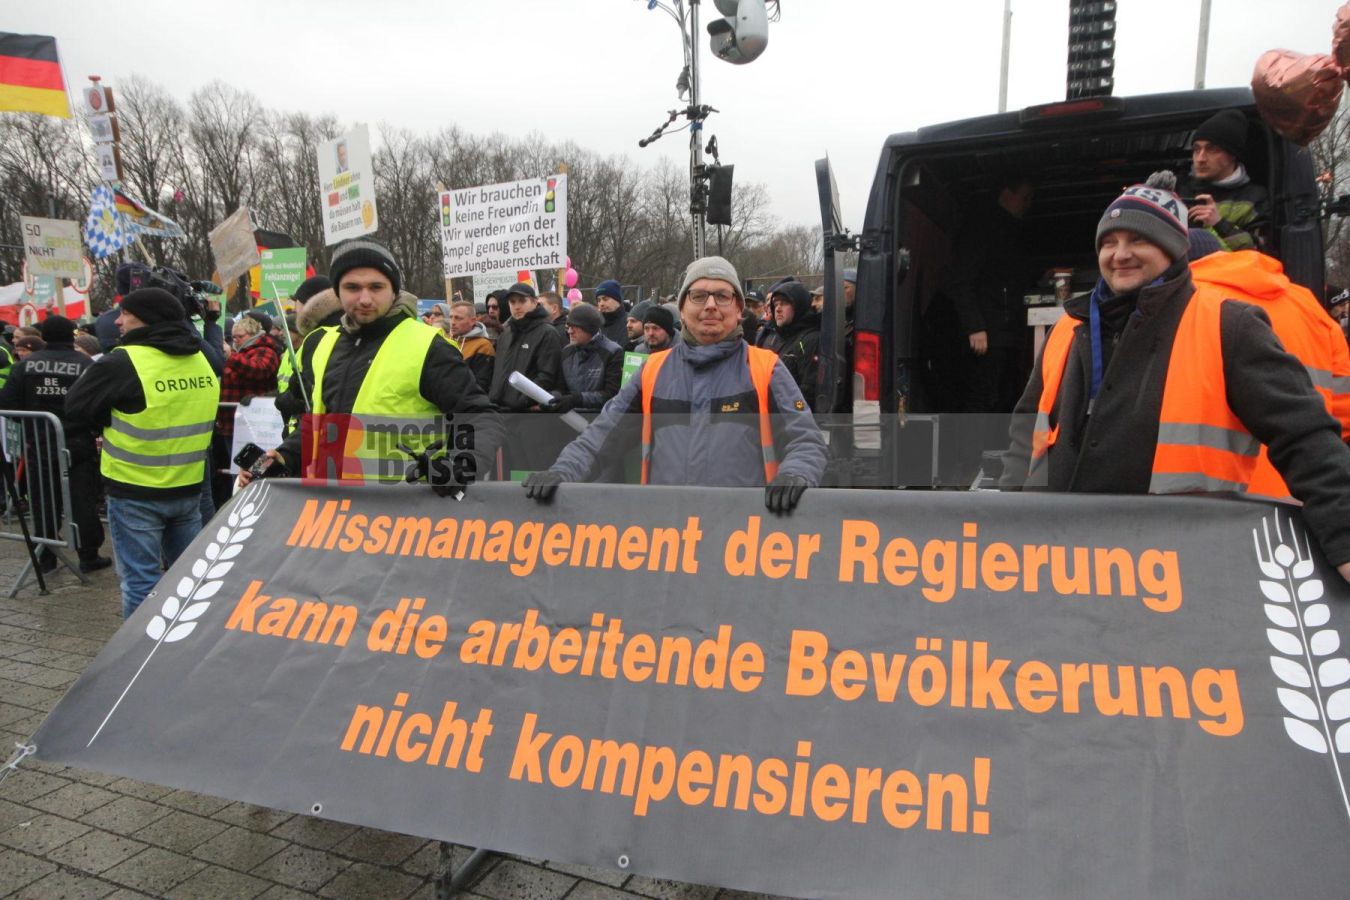 Bauernprotest in Berlin <i>Bild Denner/R-mediabase</i> <br><a href=/confor2/?bld=79049&pst=78995&aid=86&i1=Denner/R-mediabase>Download Bild 79049</a>  <br><a href=/?p=78995>Zum Beitrag 78995</a>